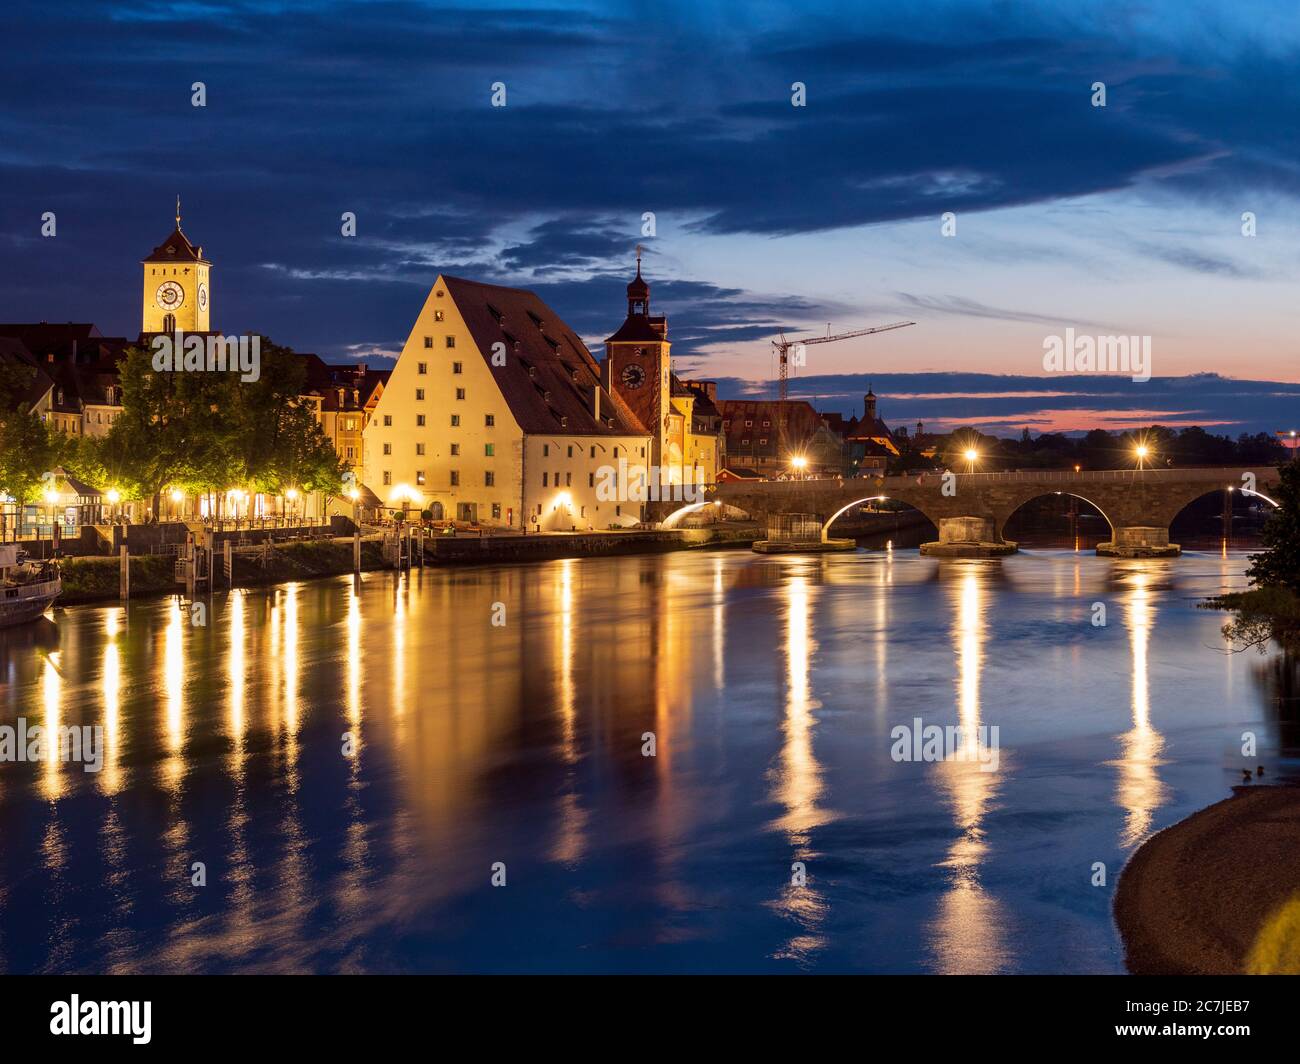 Ratisbonne, vieille ville, crépuscule, pont de pierre, Danube, Bavière, Allemagne Banque D'Images